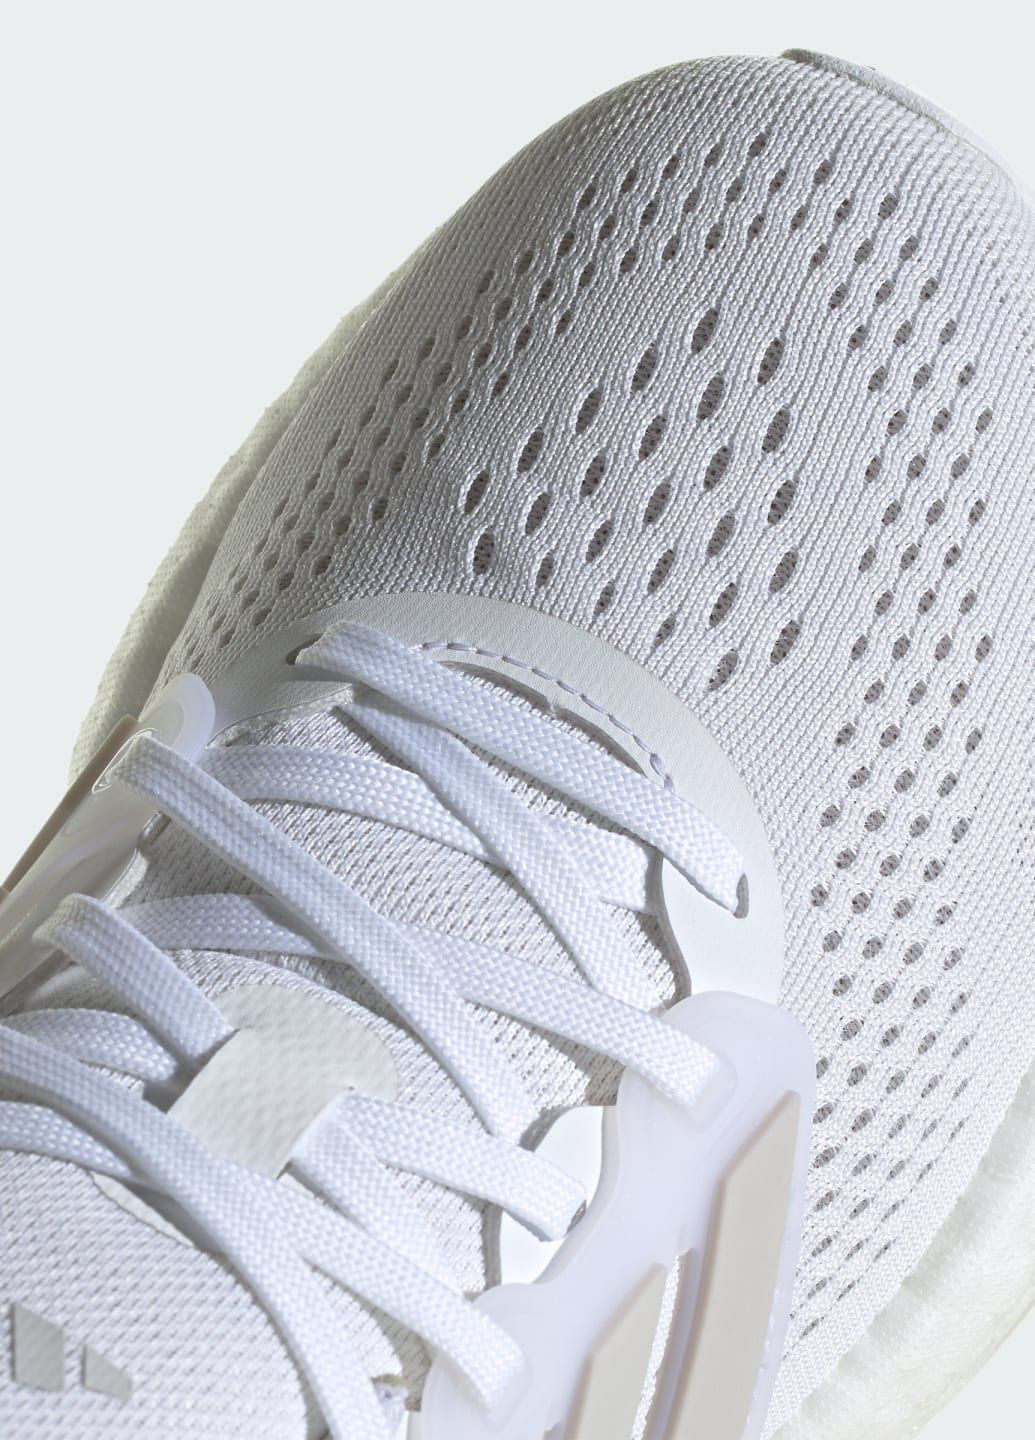 Білі всесезонні кросівки pureboost 23 adidas